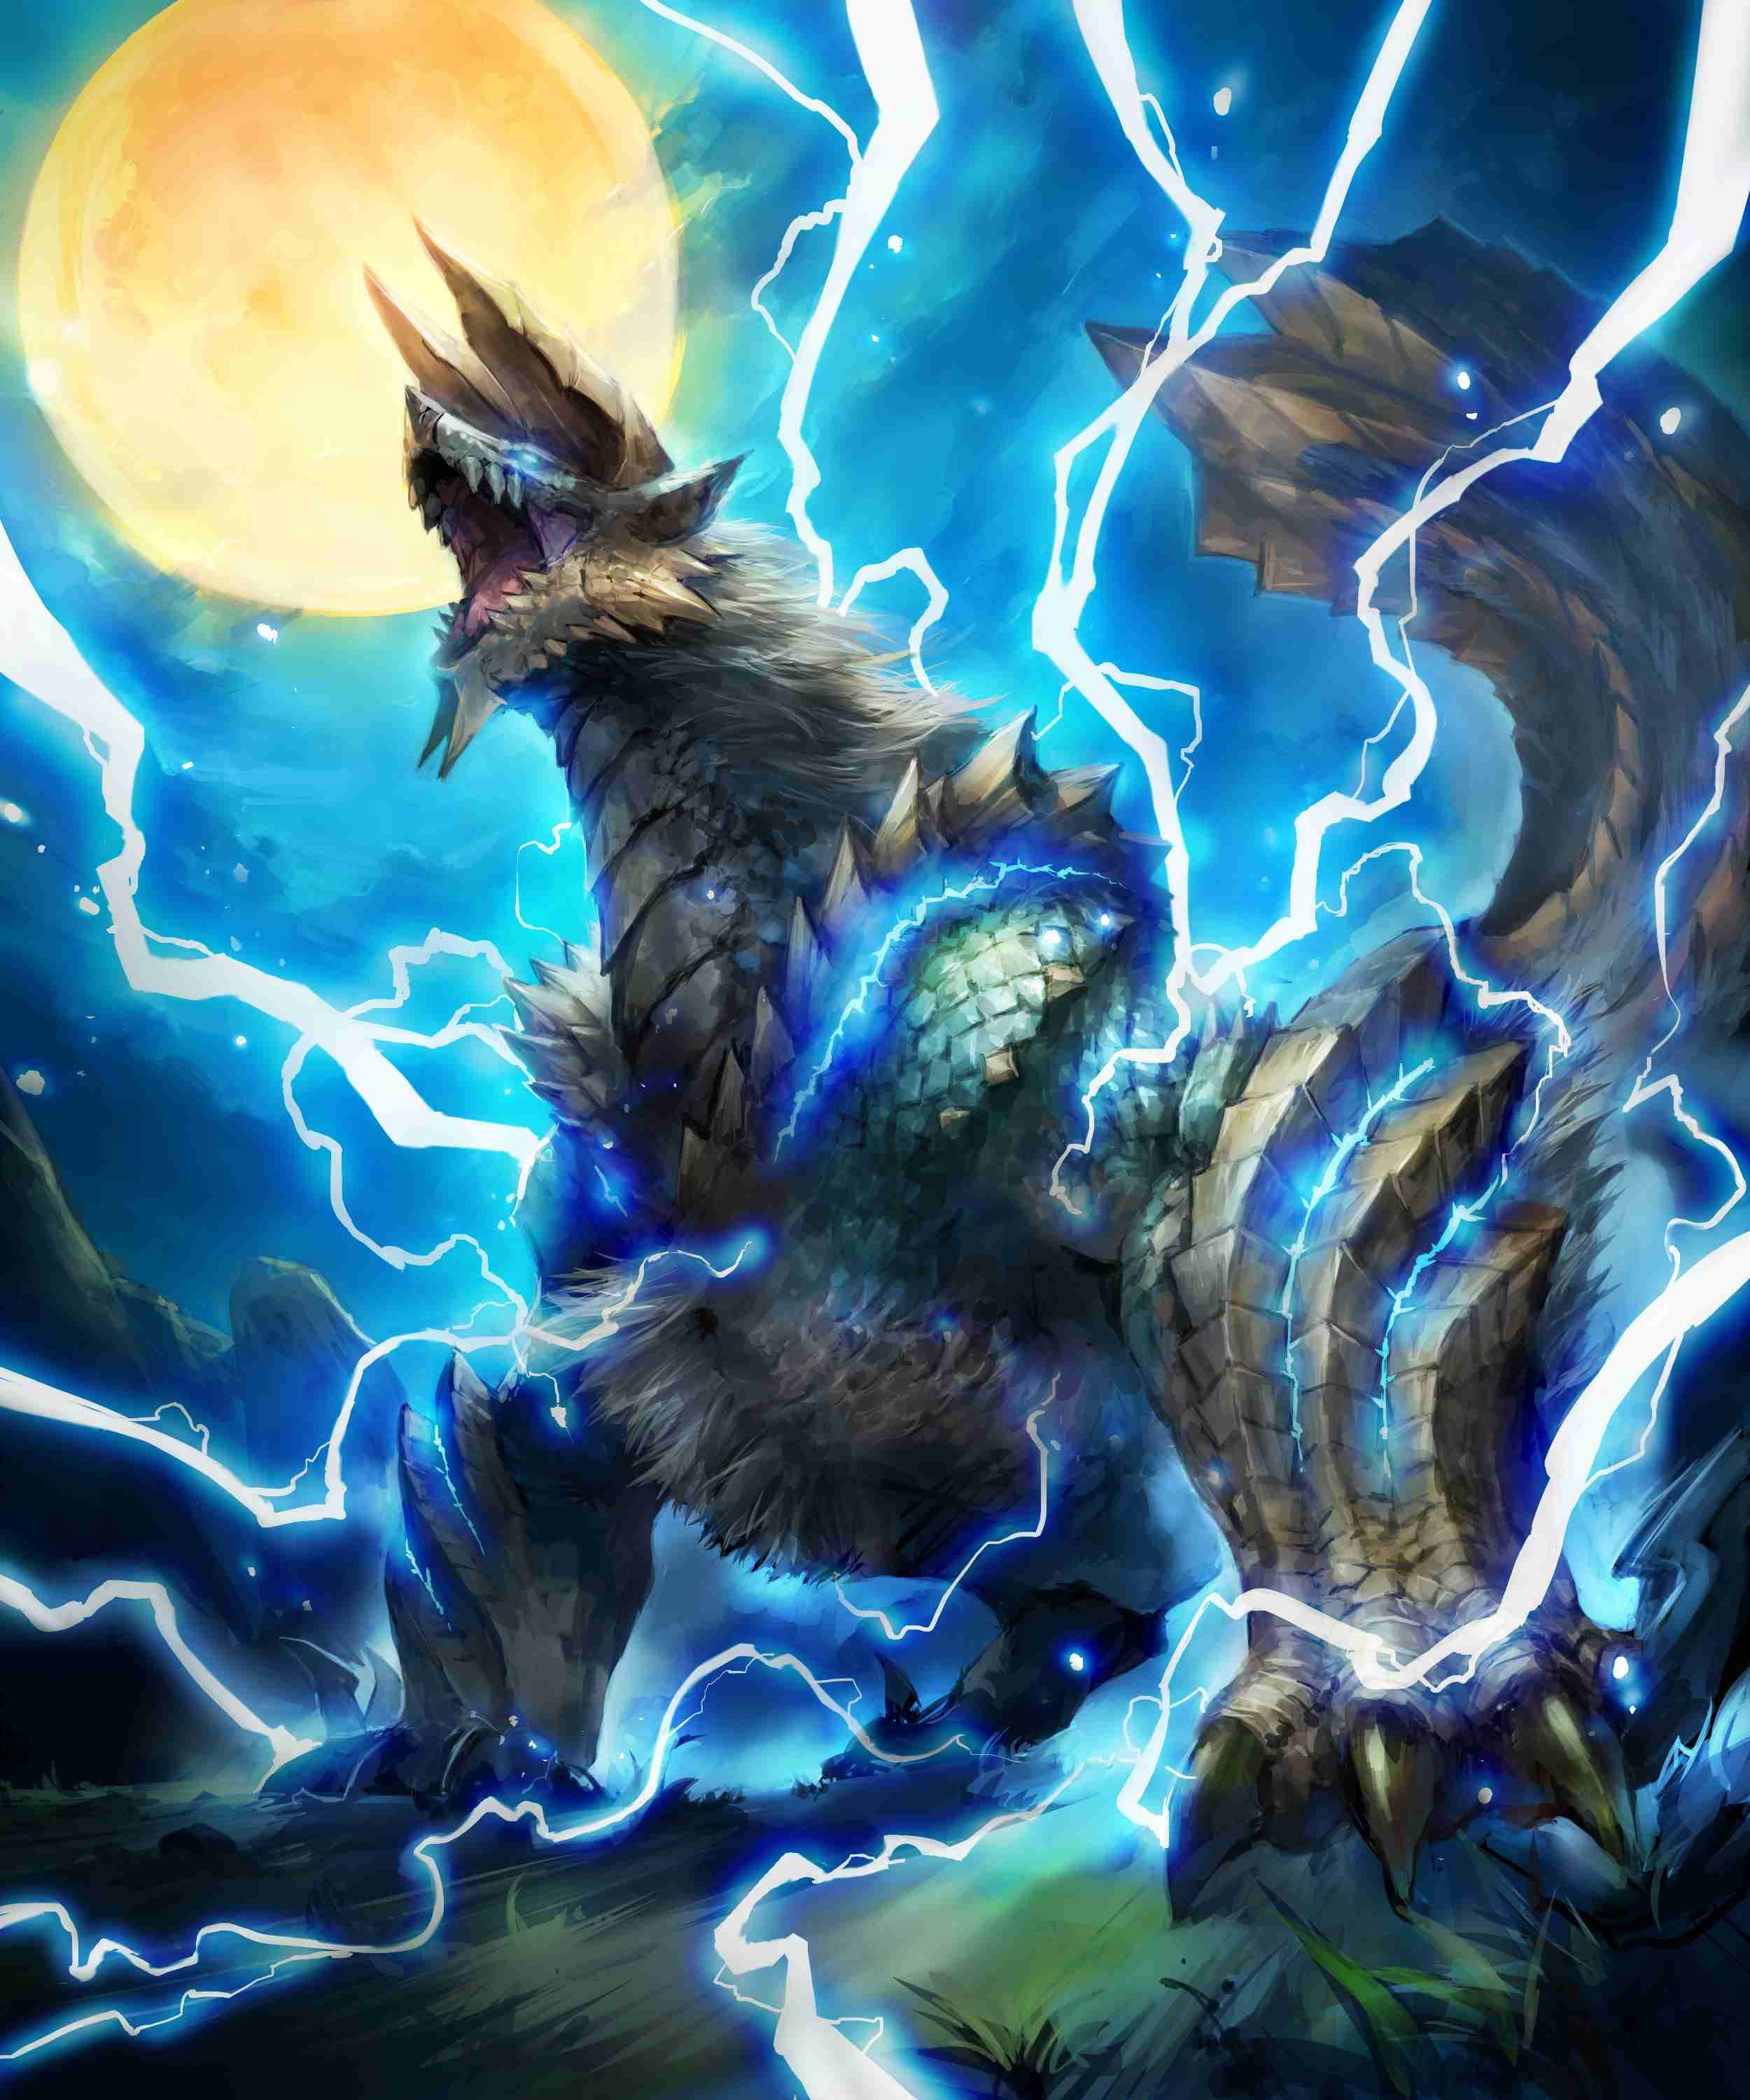 illustration of gray monster with horns and lightning, Monster Hunter